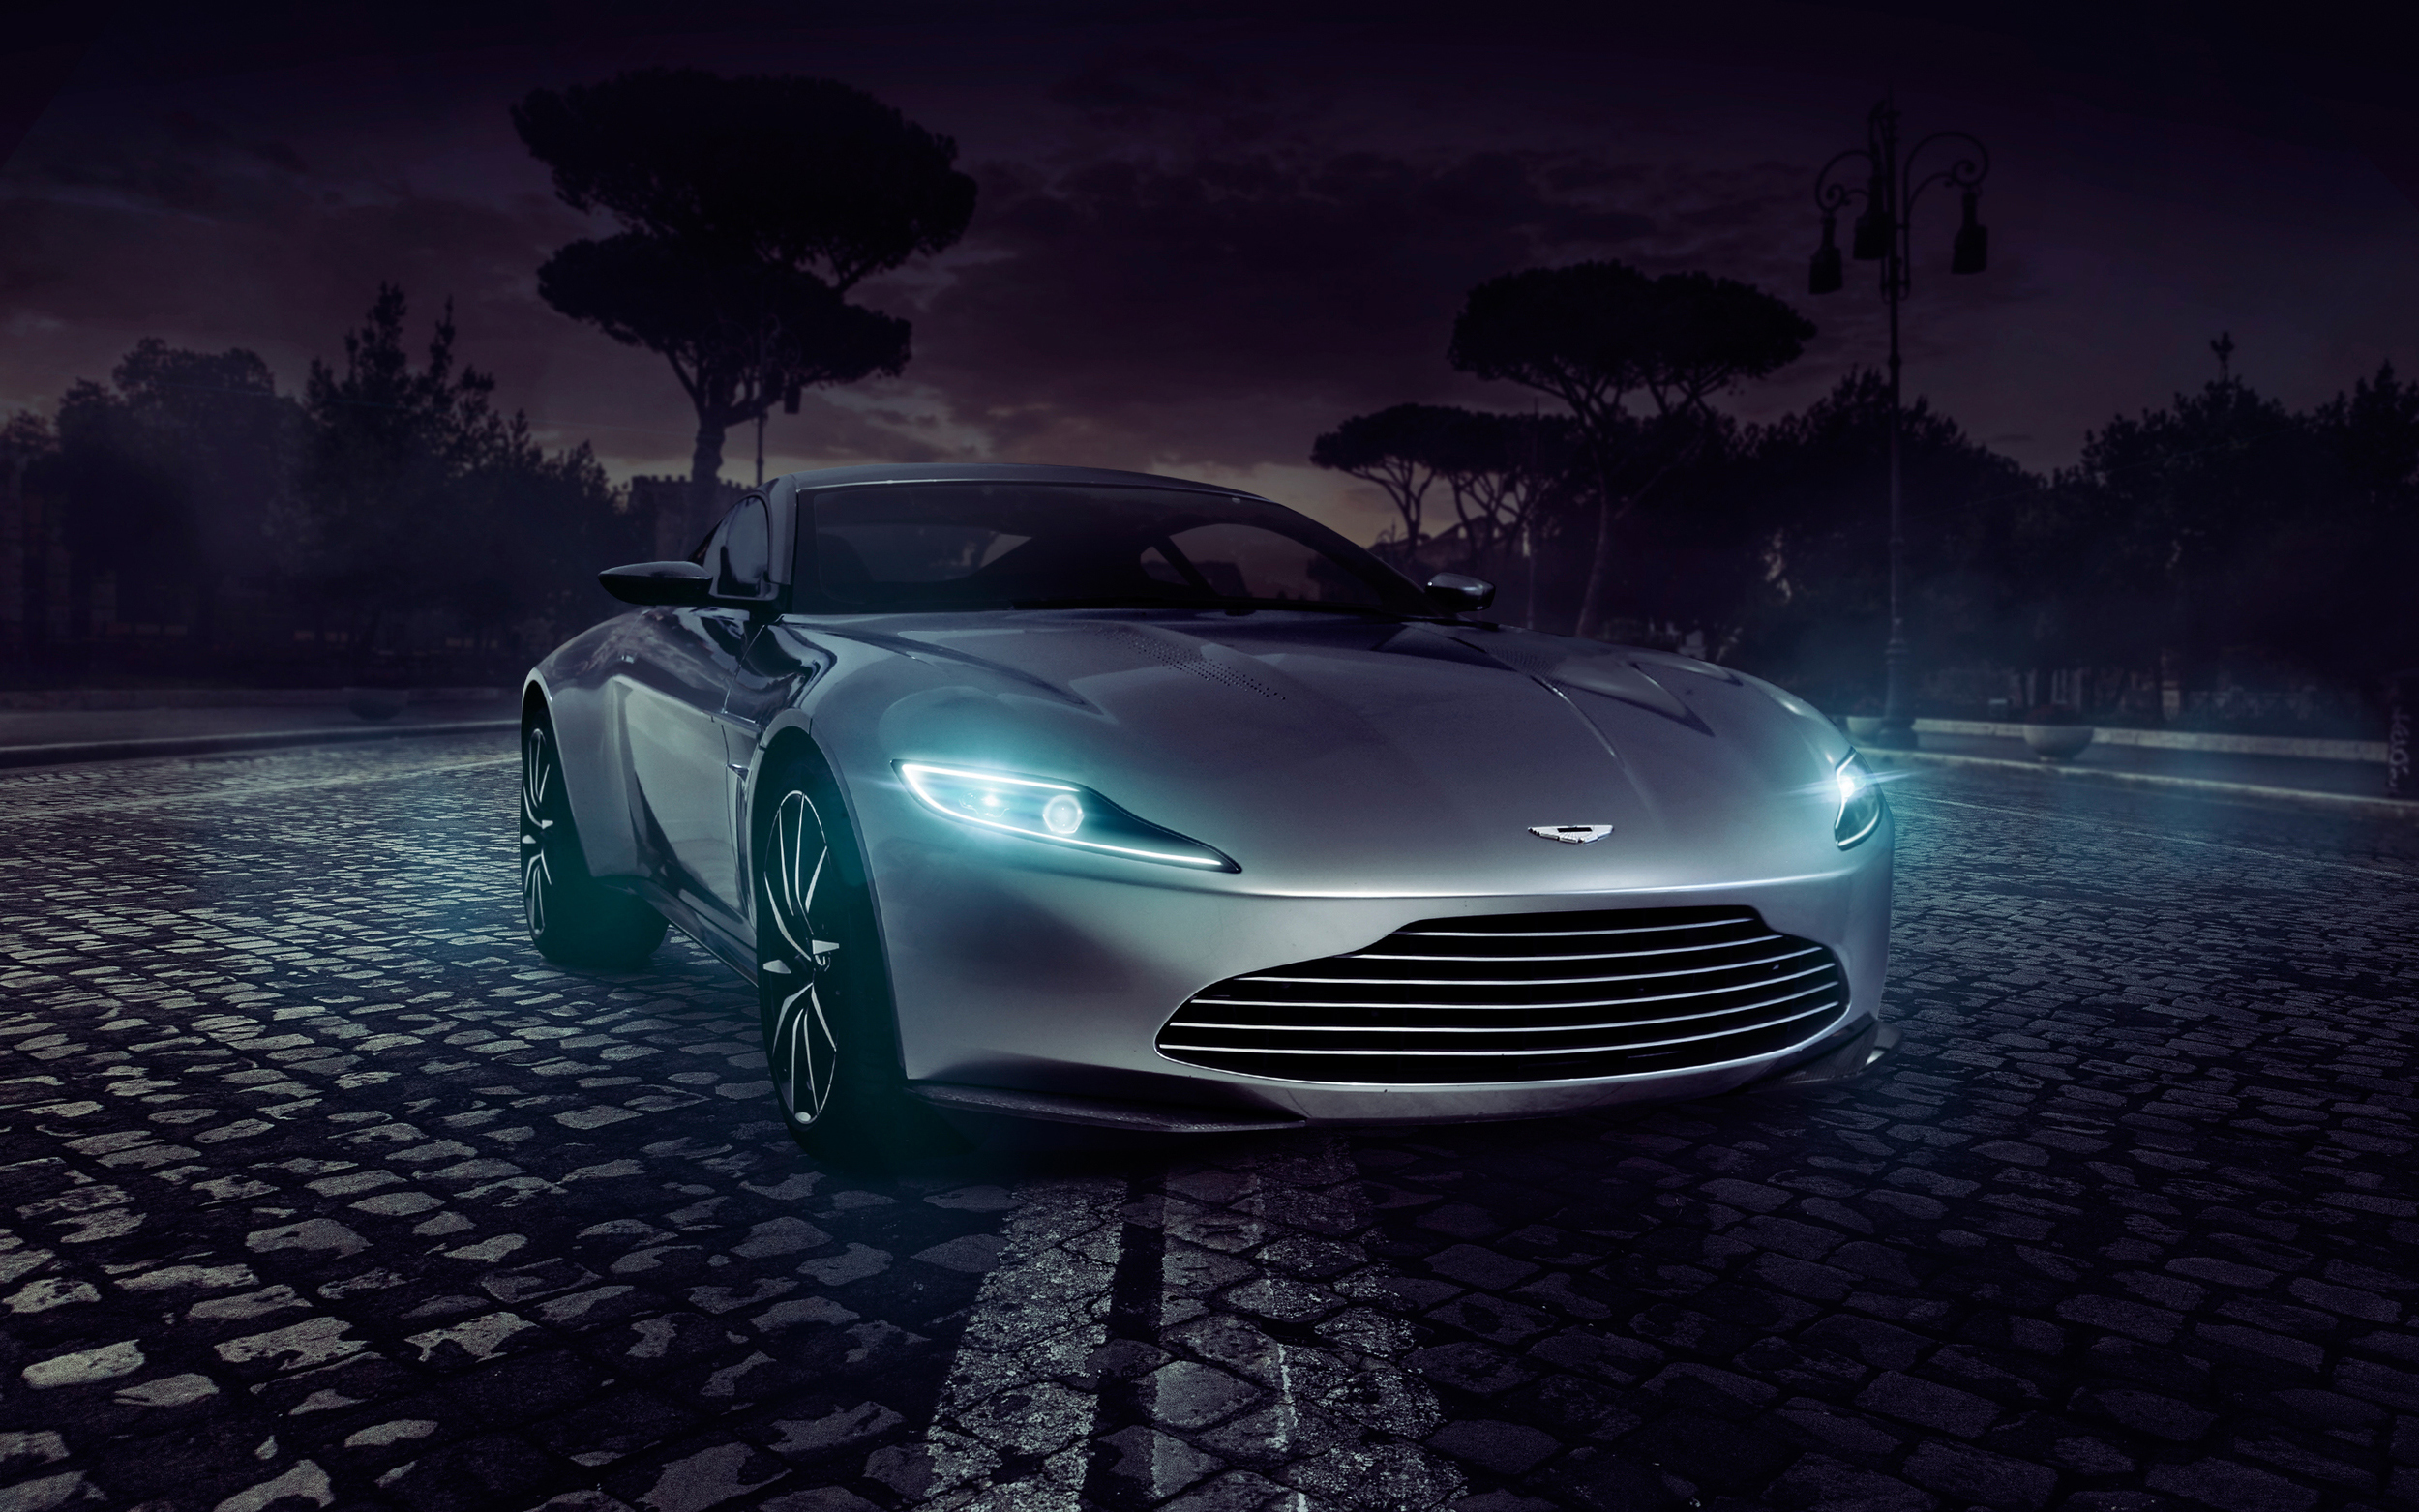 Descarga gratuita de fondo de pantalla para móvil de Aston Martin, Coche, Superdeportivo, Vehículos, Coche De Plata, Aston Martin Db10.